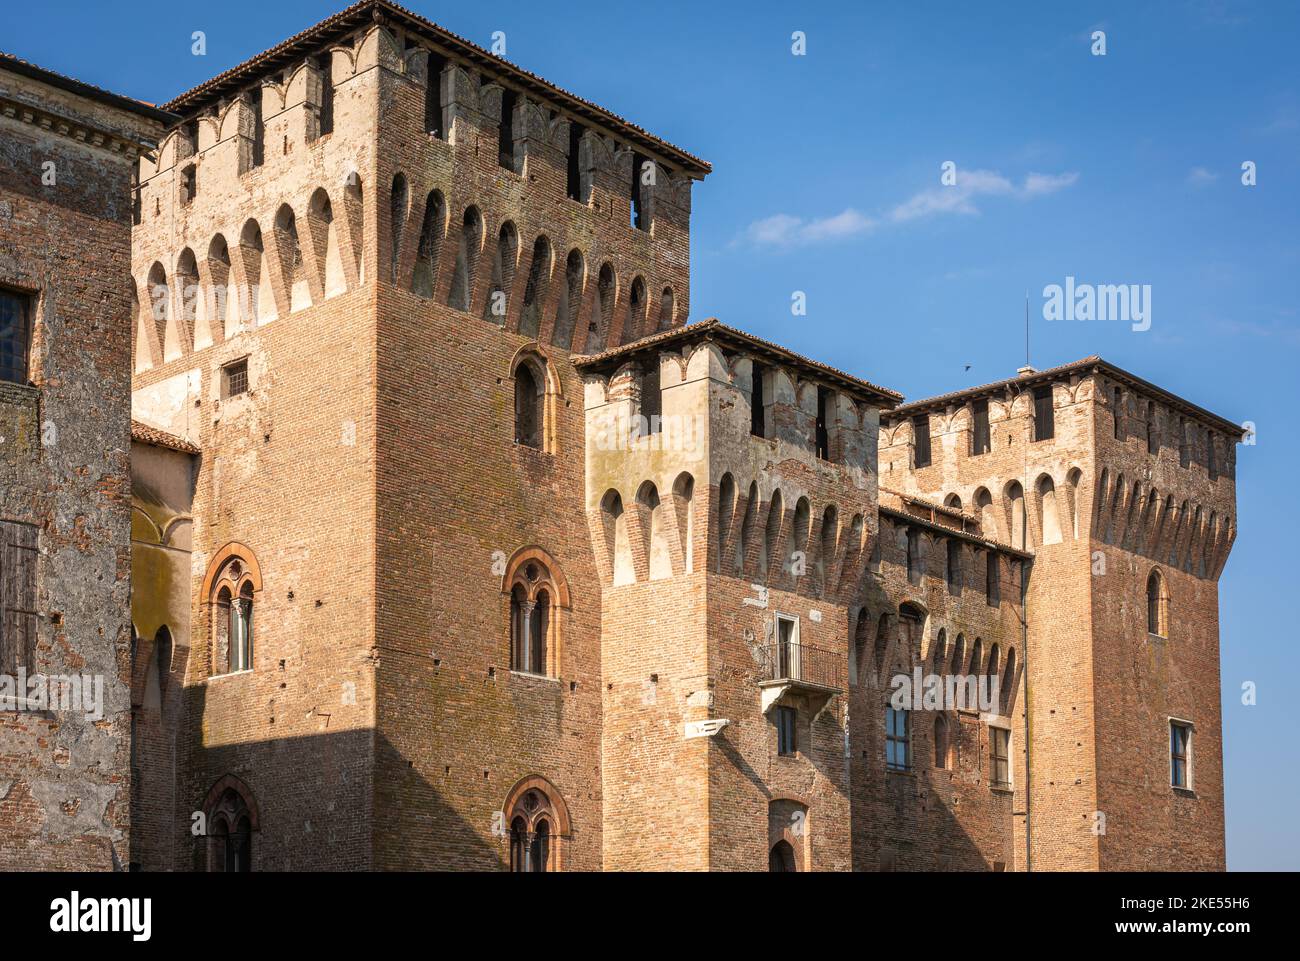 Castello di San Giorgio (Château de Saint George) est un château rectangulaire amarré à Mantua, situé dans le coin nord-est de la ville. Banque D'Images